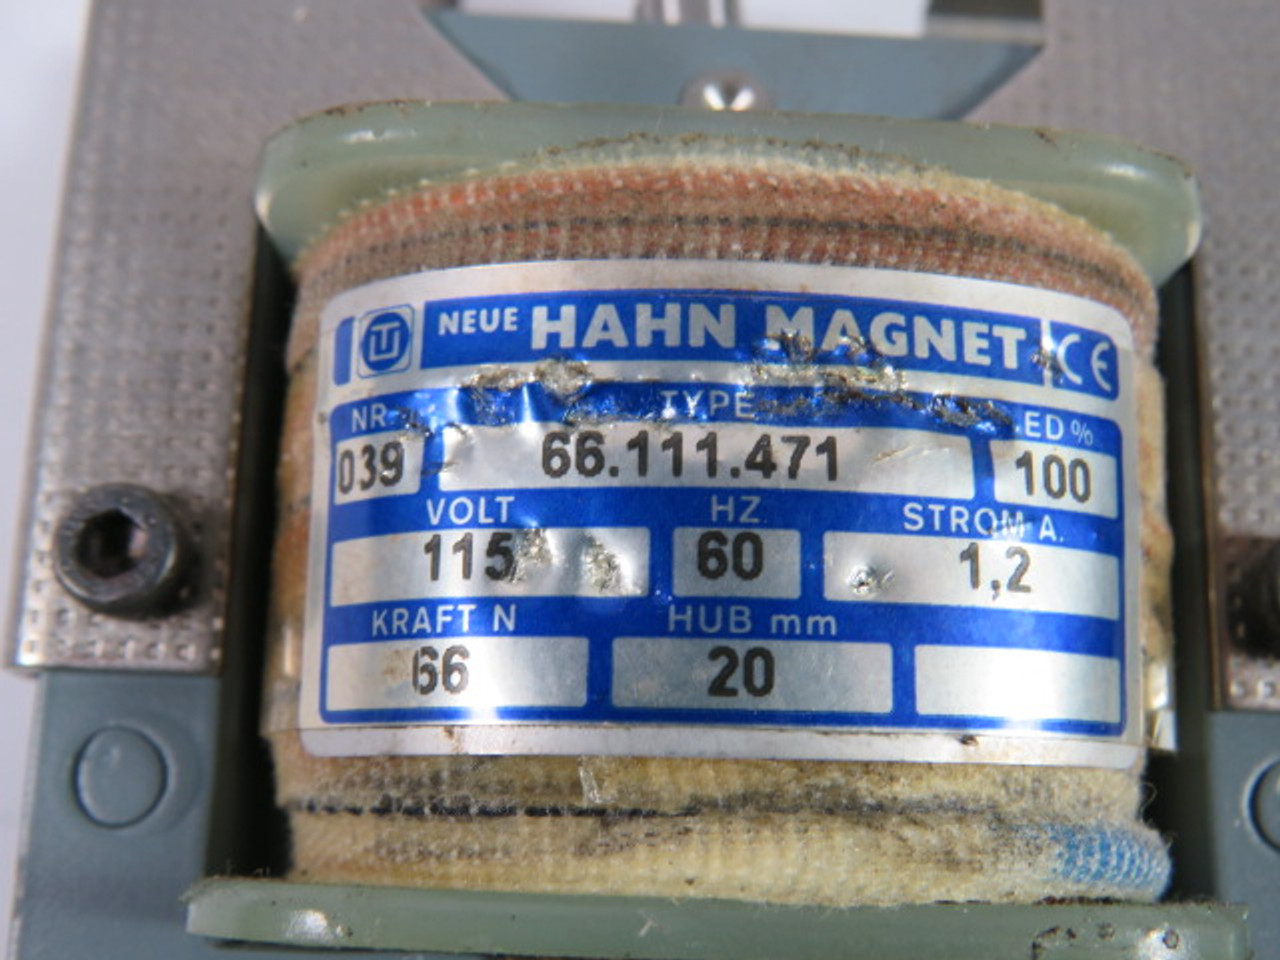 Hahn Magnet 66.111.471 Magnetic Solenoid Coil 115V 1.2A 60Hz 20mm USED